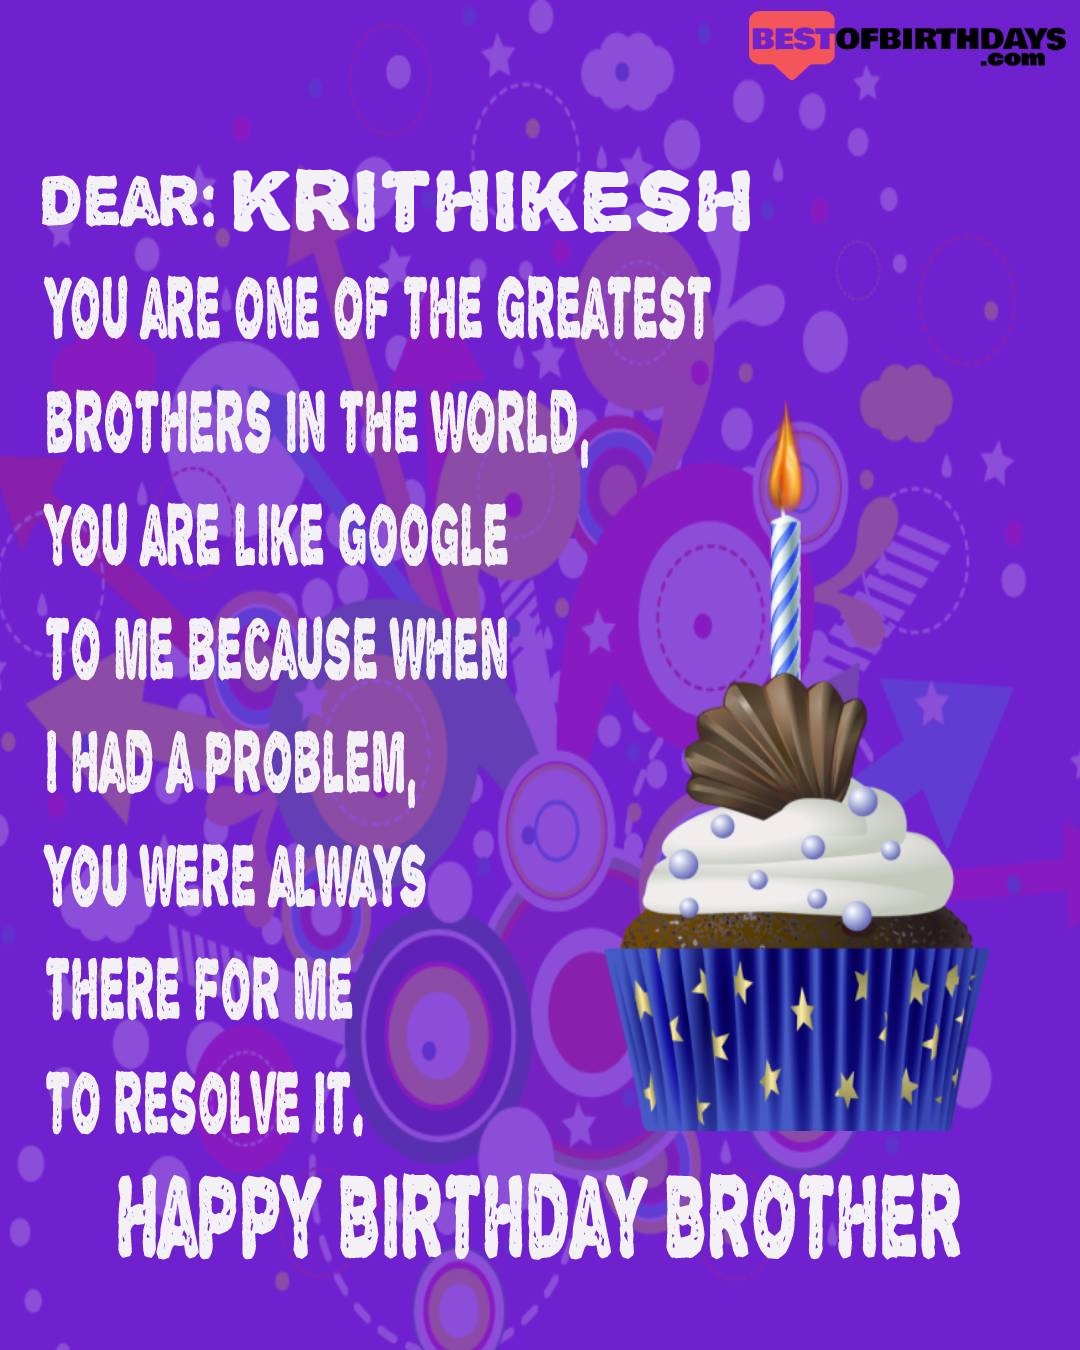 Happy birthday krithikesh bhai brother bro